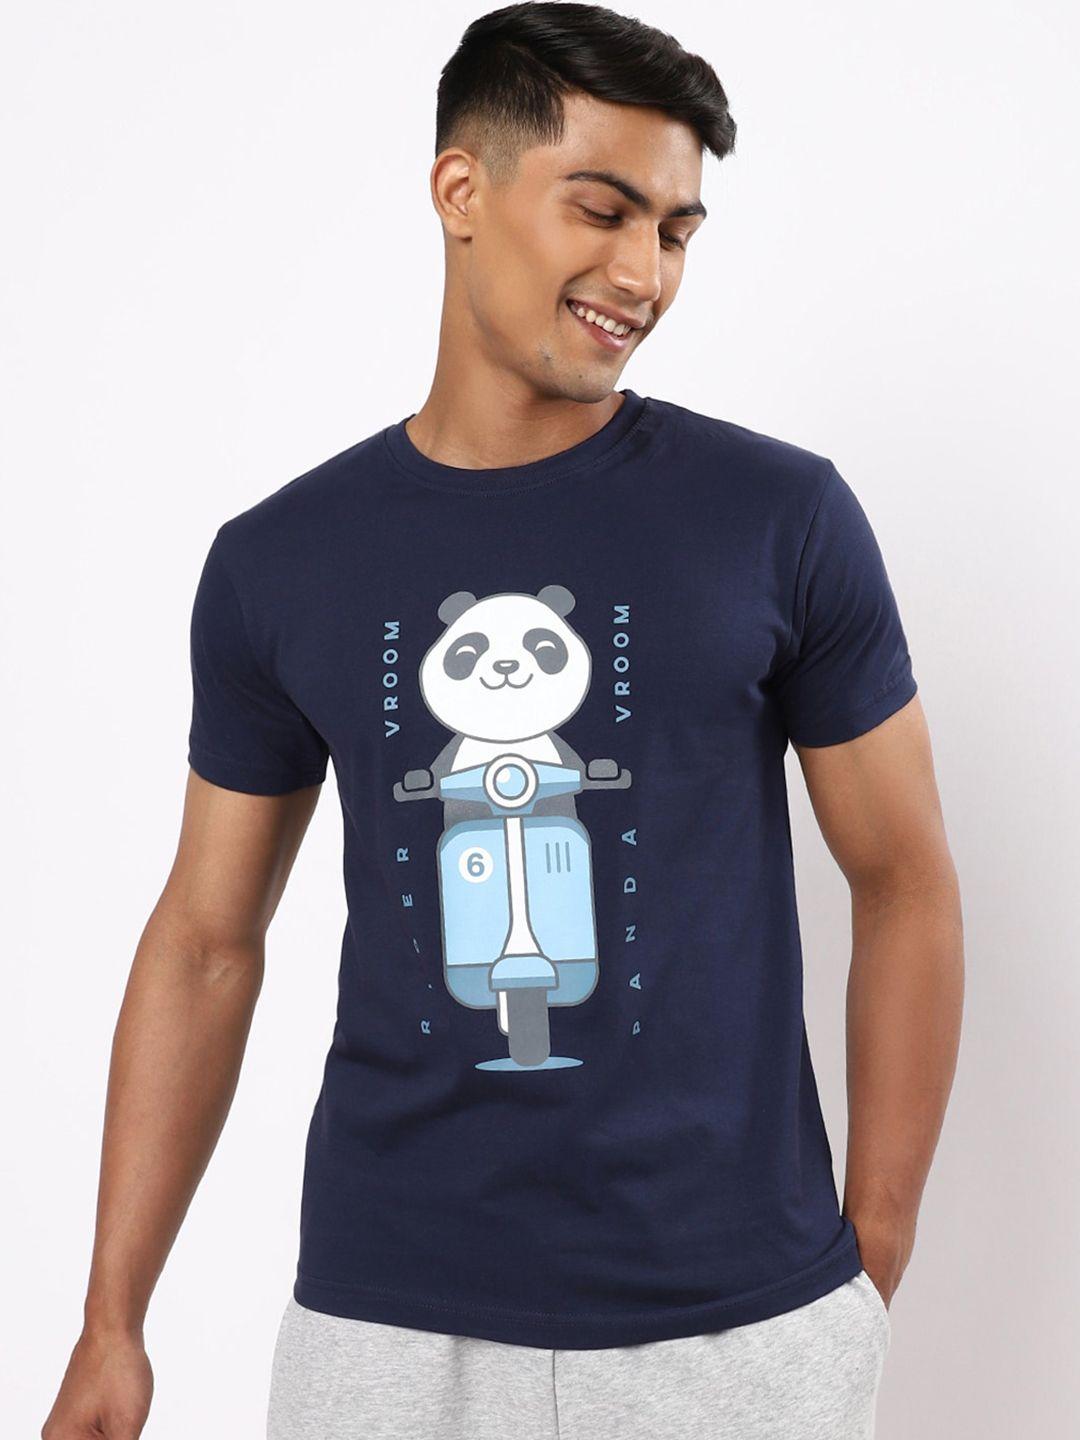 bewakoof-men-blue-printed-t-shirt